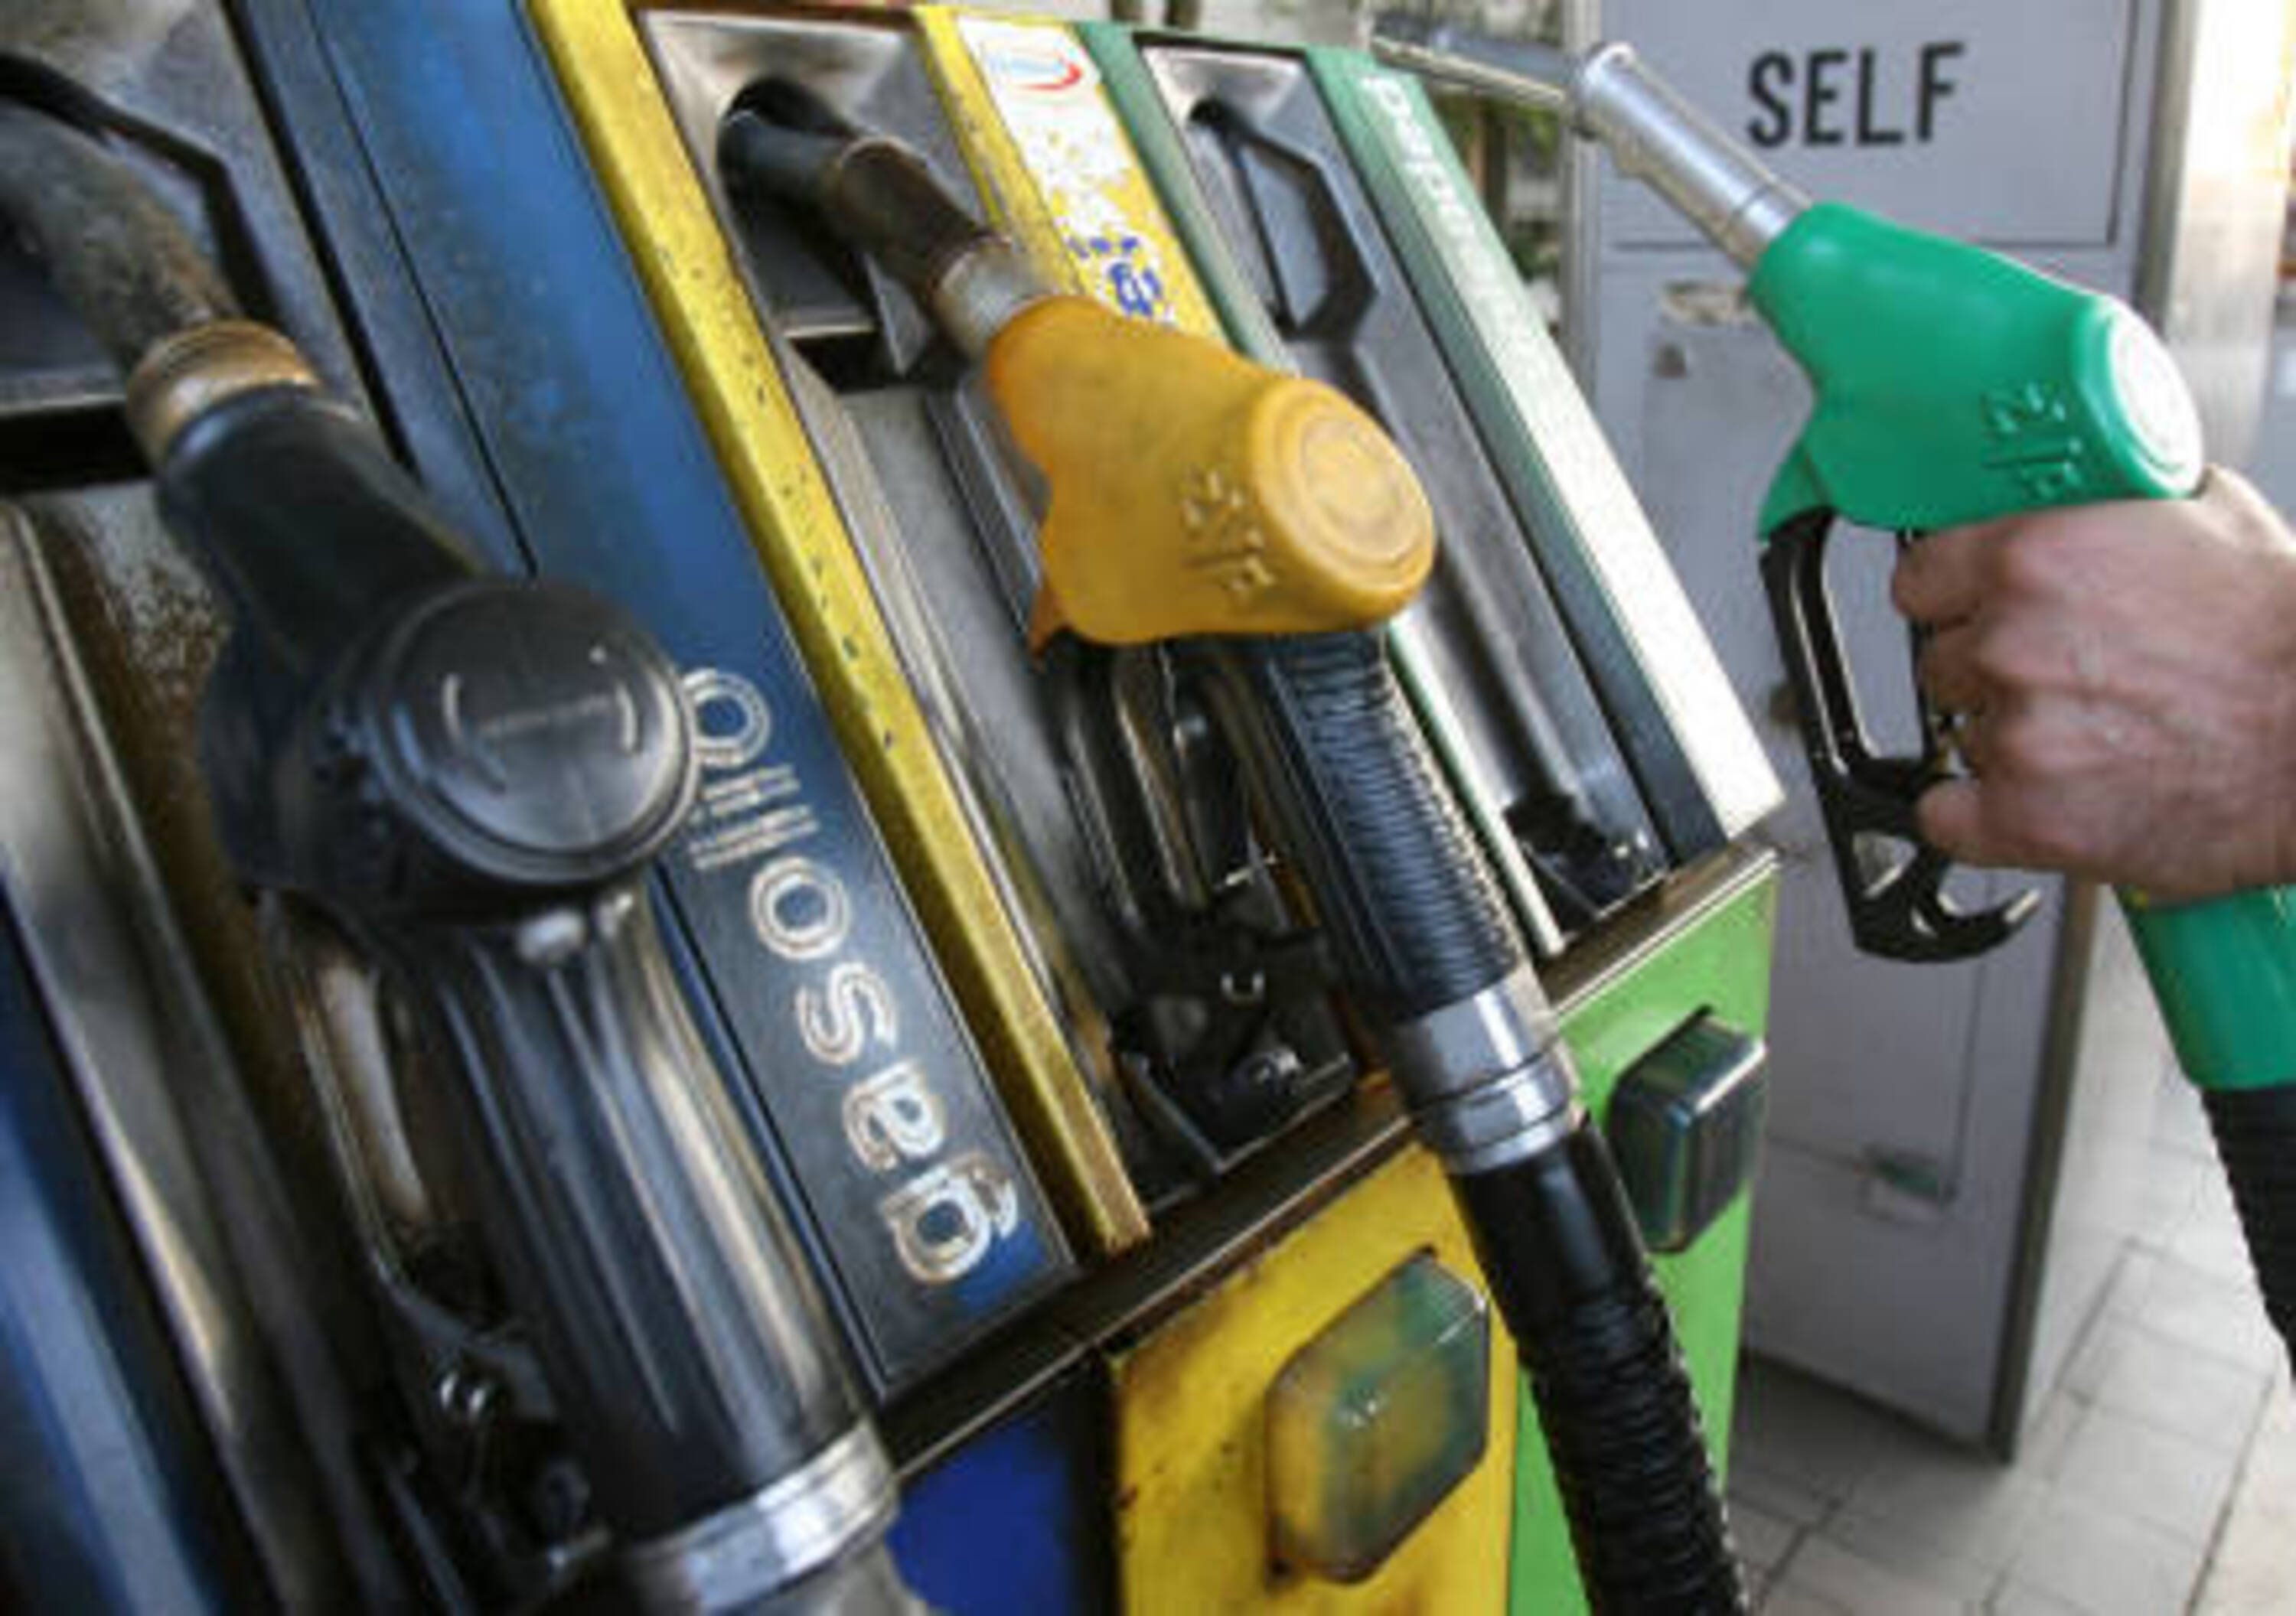 IVA al 22%: perch&eacute; i prezzi della benzina sono gli unici ad essere subito aumentati?